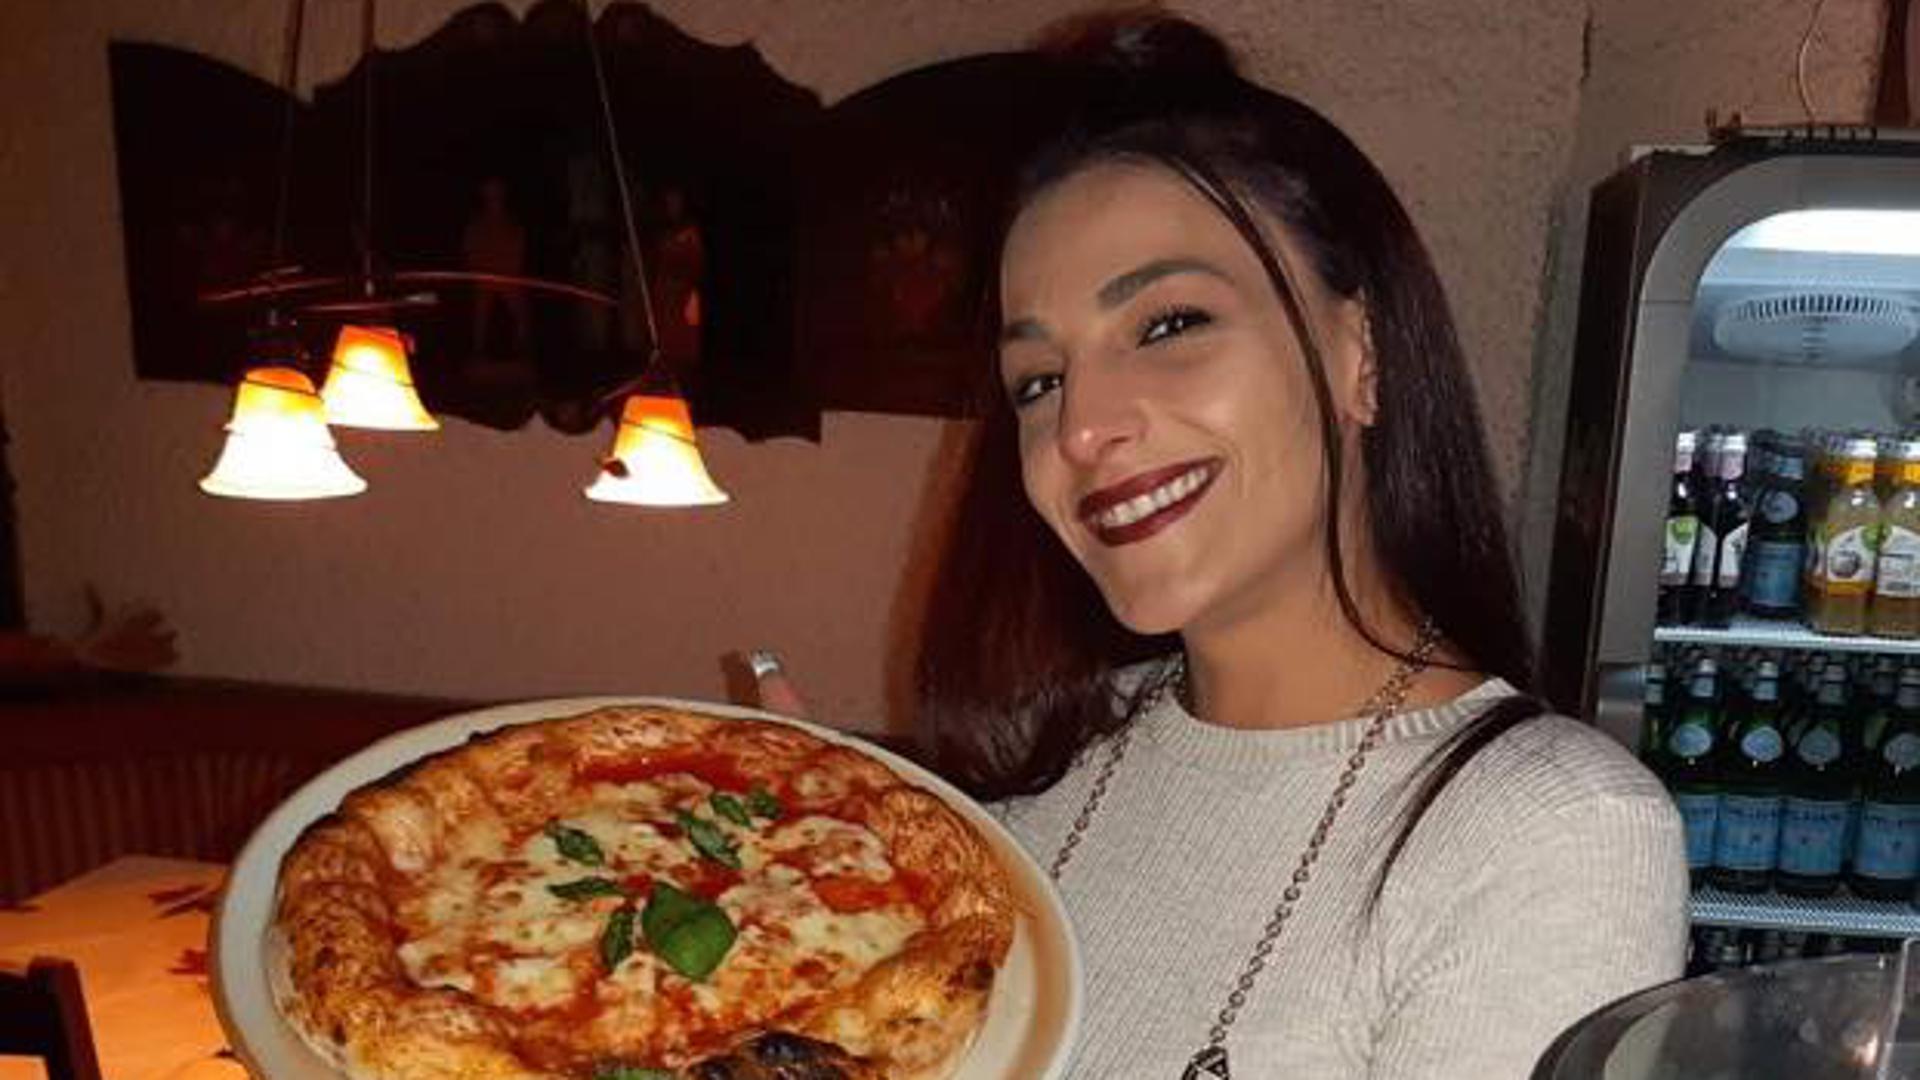 Junge Dame mit toller Pizza auf einem Teller in der Hand